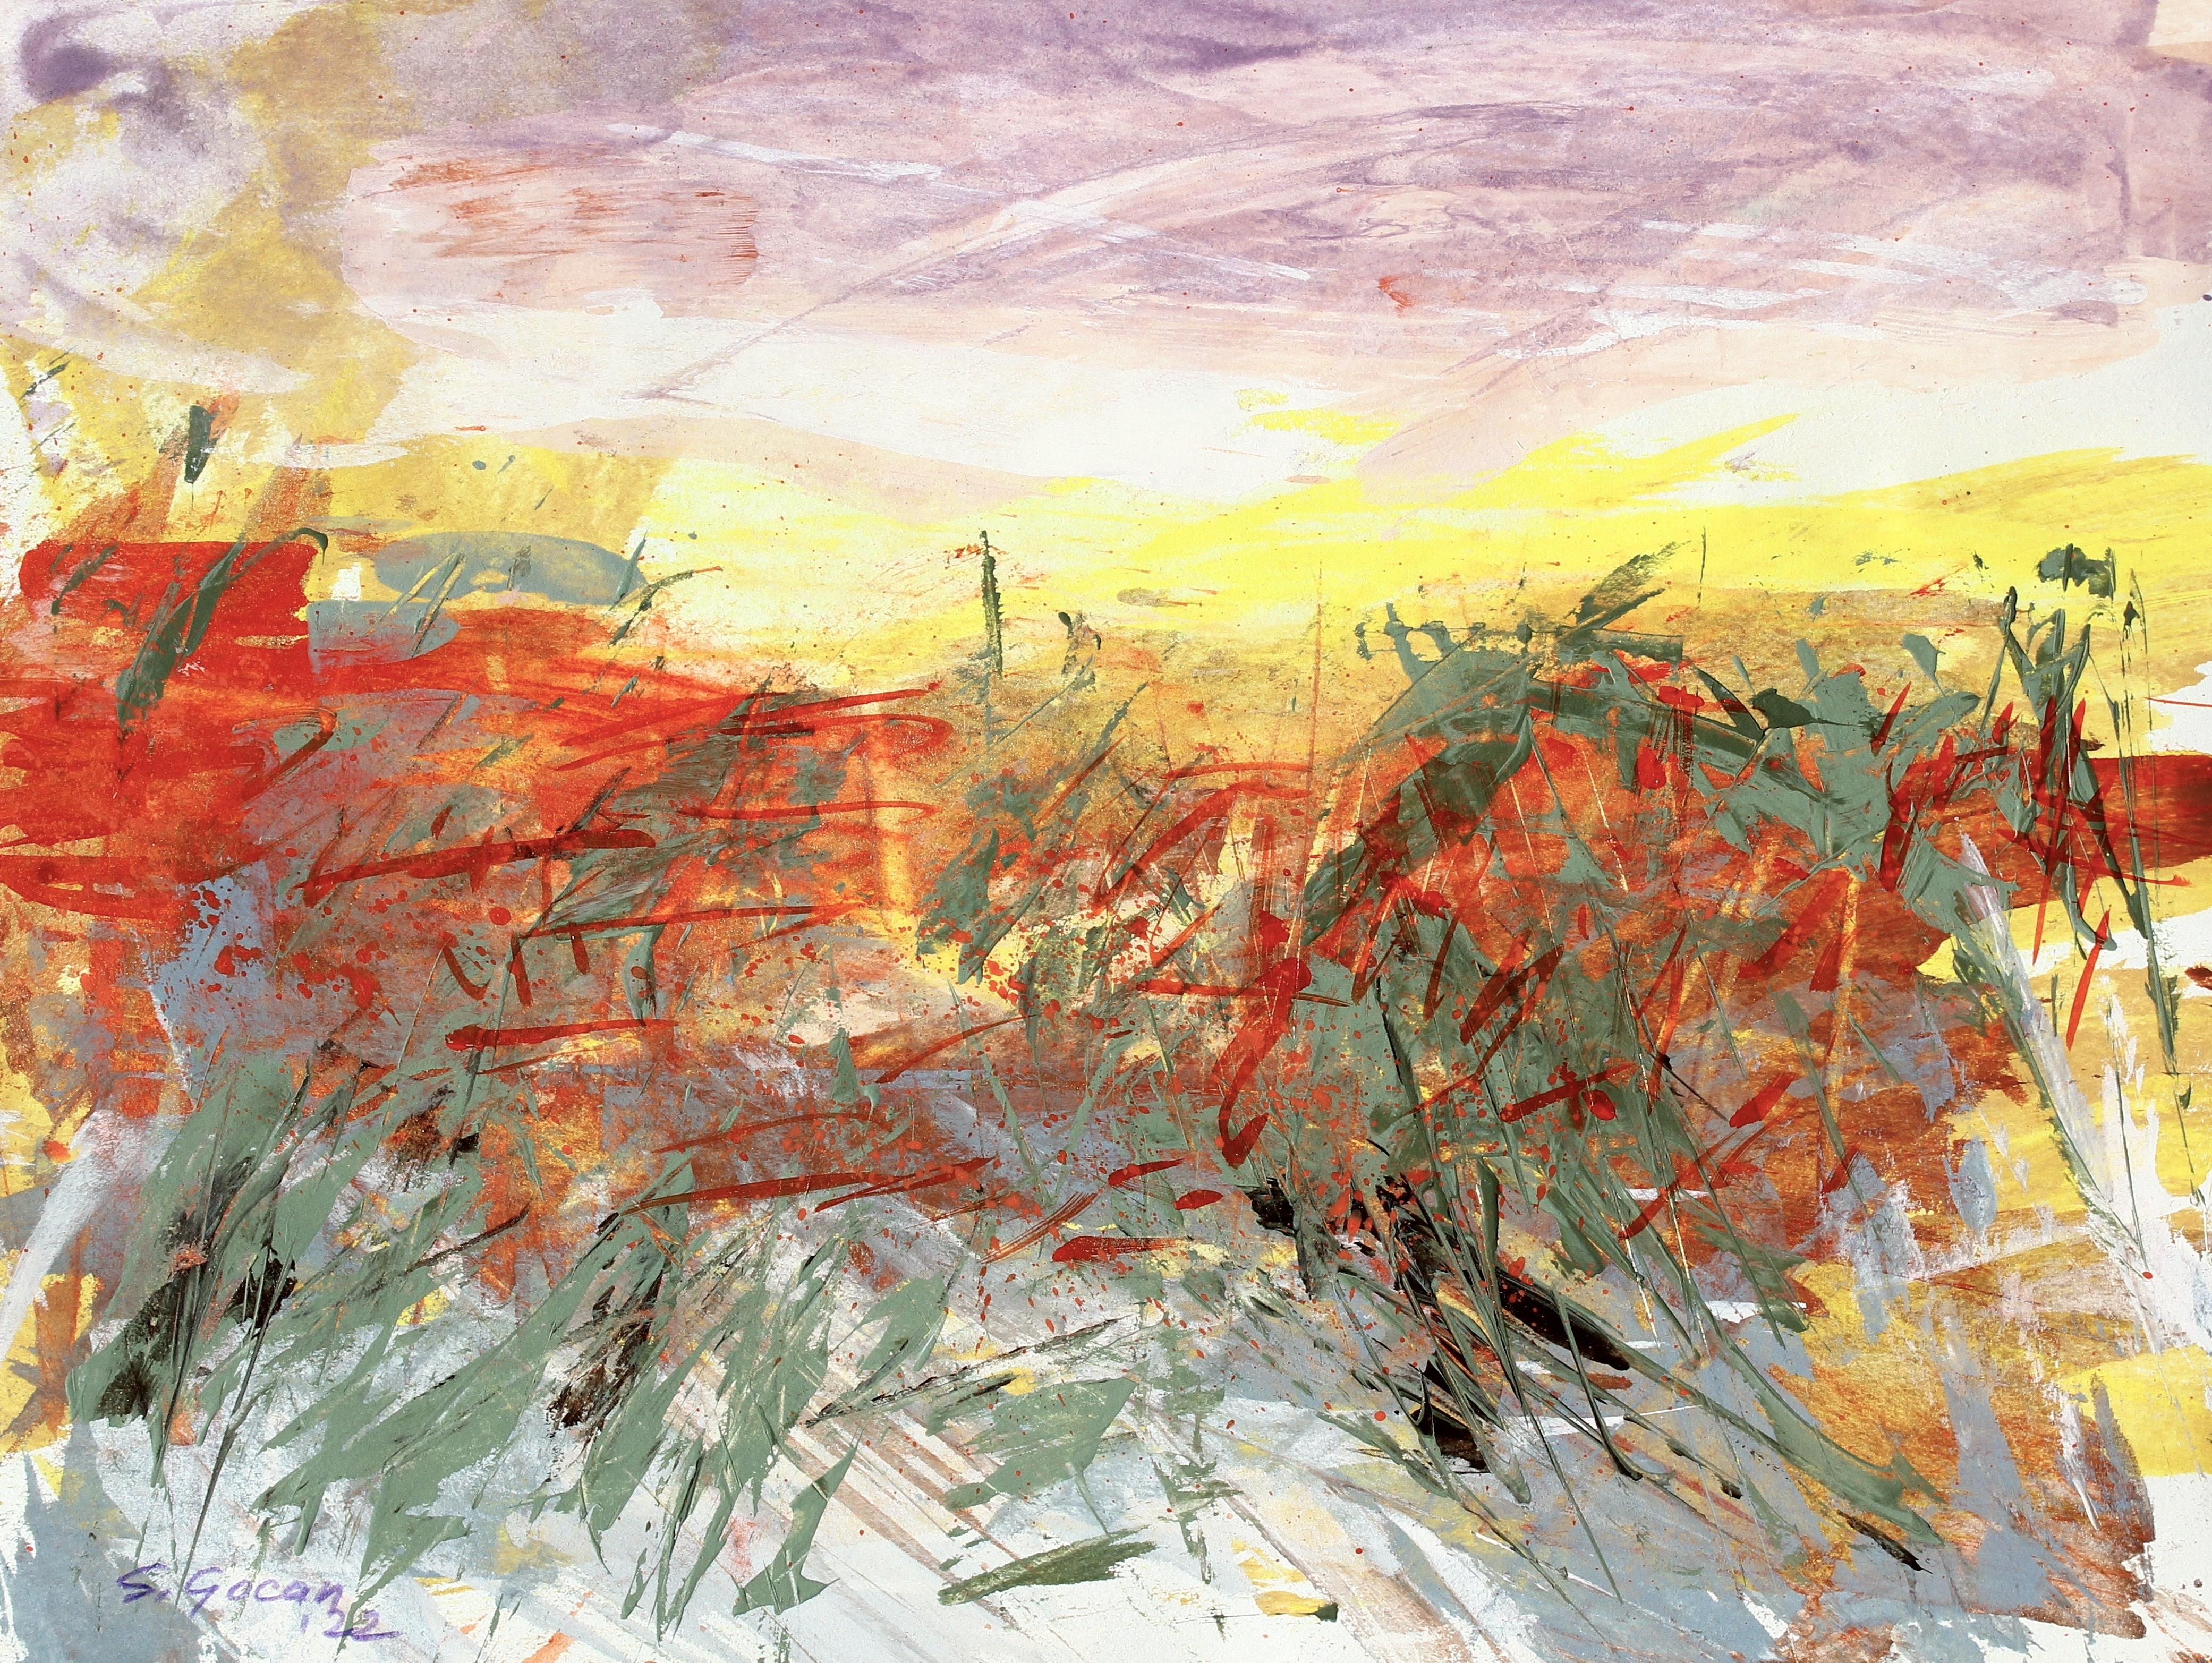 Desertscape #4, signiertes zeitgenössisches Landschaftsgemälde des abstrakten Expressionismus